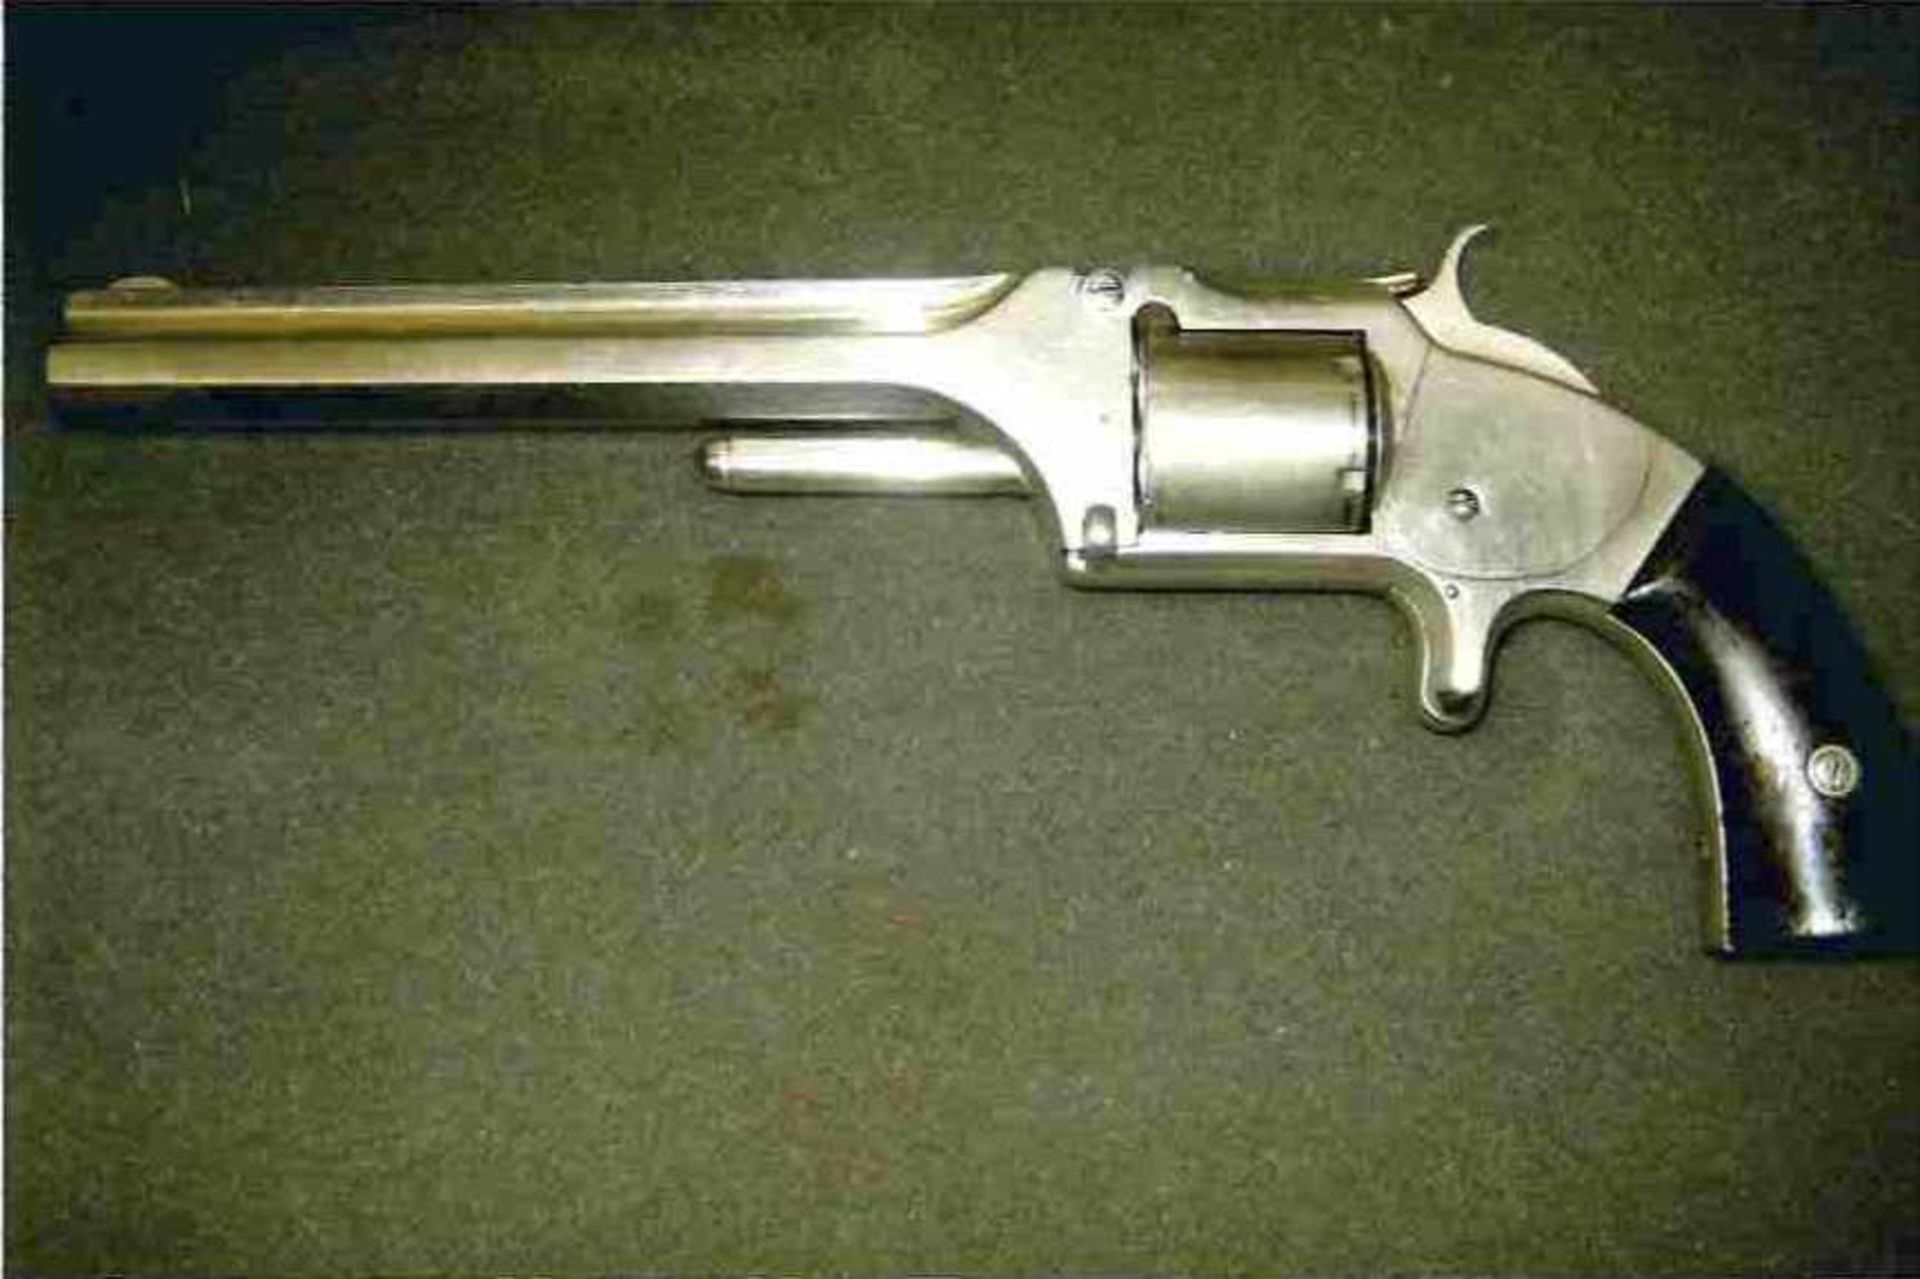 Revolver Smith & Wesson Old Model N°2 Catégorie D. Nickelé d'origine, présentant de légères rayures.